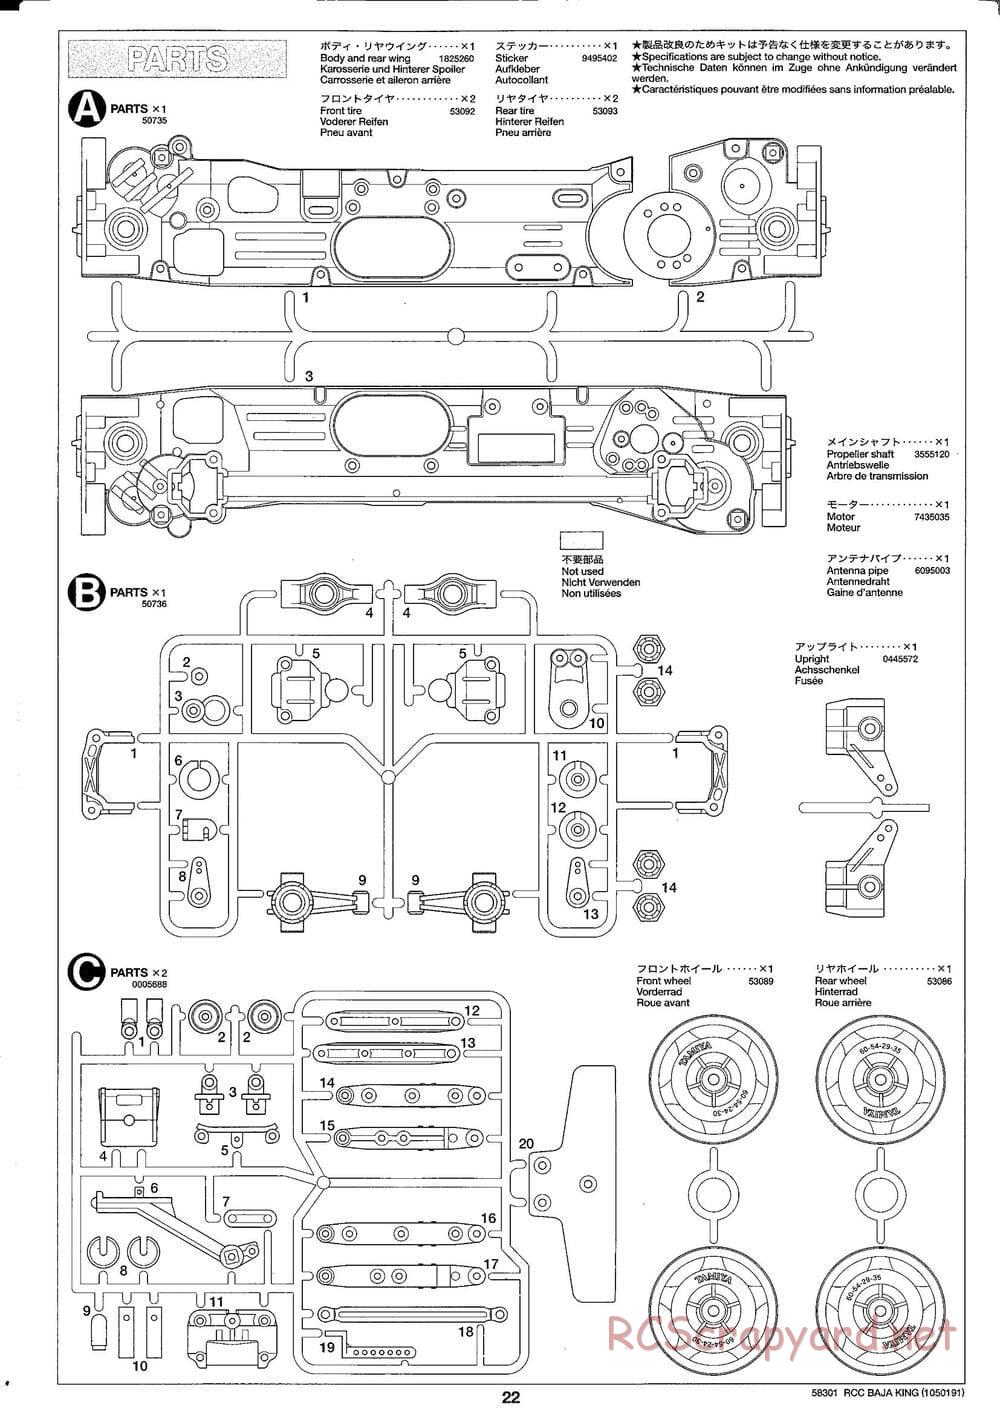 Tamiya - Baja King - TL-01B Chassis - Manual - Page 22